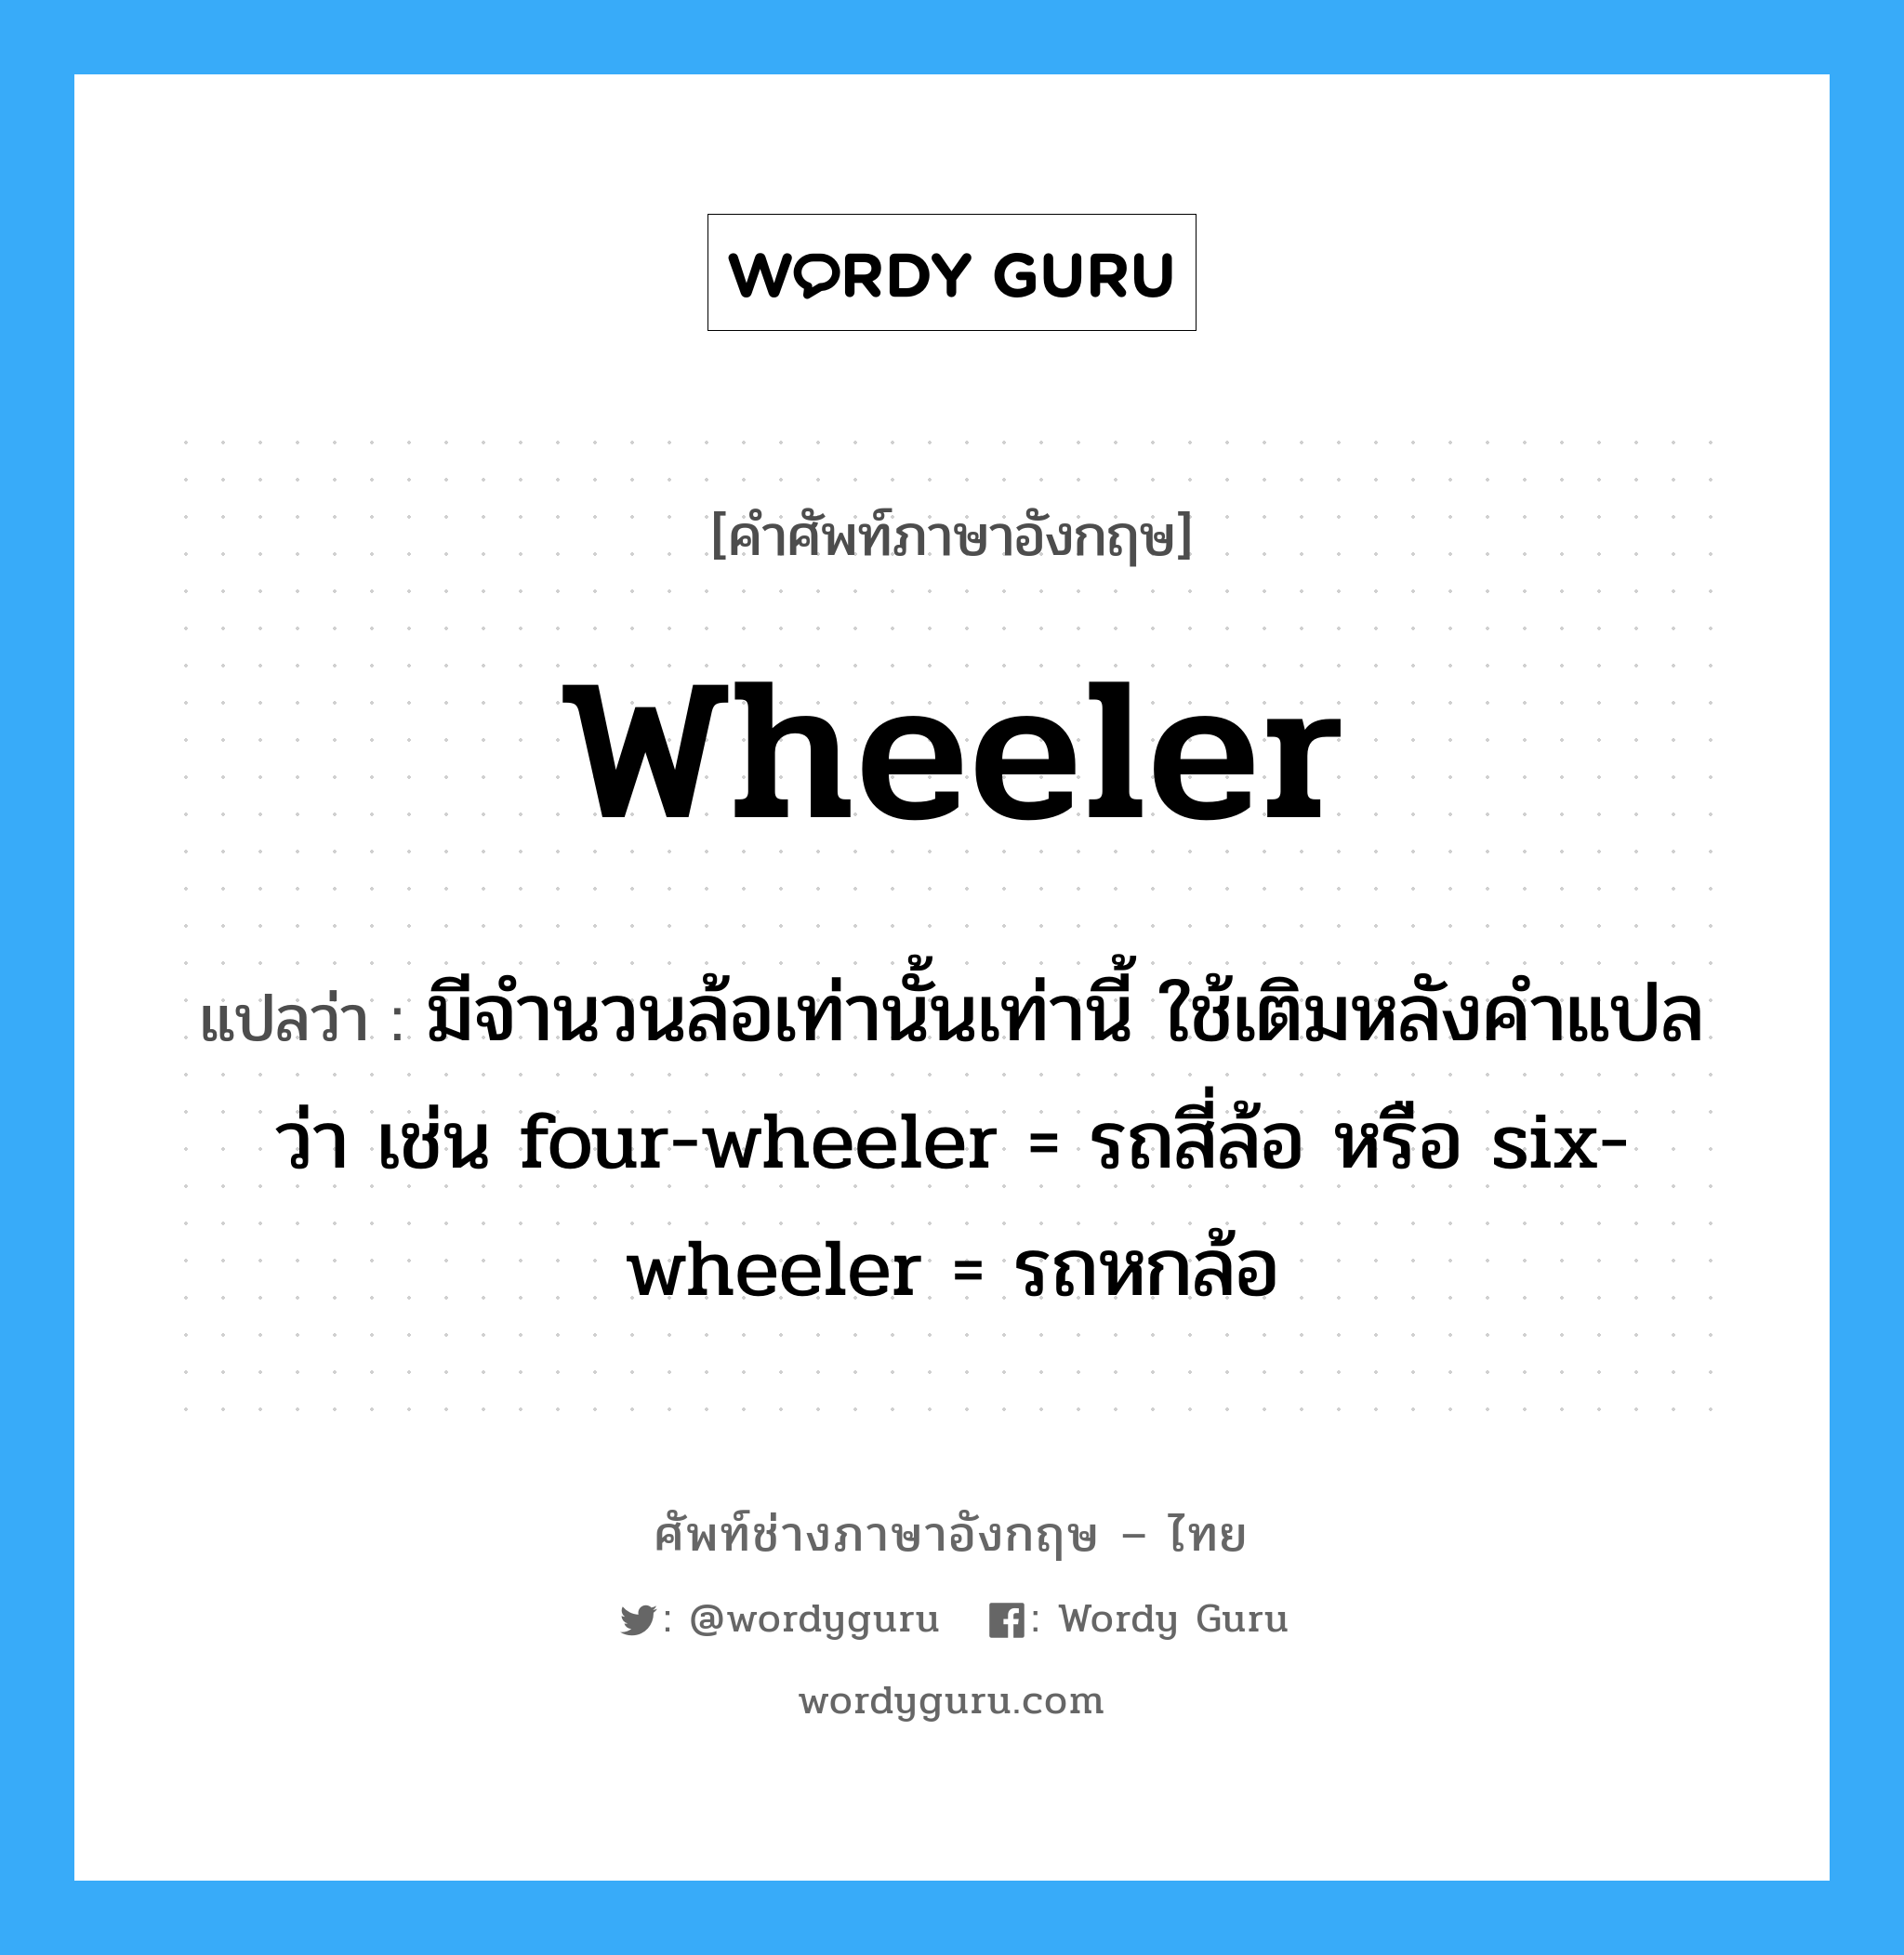 มีจำนวนล้อเท่านั้นเท่านี้ ใช้เติมหลังคำแปลว่า เช่น four-wheeler = รถสี่ล้อ หรือ six-wheeler = รถหกล้อ ภาษาอังกฤษ?, คำศัพท์ช่างภาษาอังกฤษ - ไทย มีจำนวนล้อเท่านั้นเท่านี้ ใช้เติมหลังคำแปลว่า เช่น four-wheeler = รถสี่ล้อ หรือ six-wheeler = รถหกล้อ คำศัพท์ภาษาอังกฤษ มีจำนวนล้อเท่านั้นเท่านี้ ใช้เติมหลังคำแปลว่า เช่น four-wheeler = รถสี่ล้อ หรือ six-wheeler = รถหกล้อ แปลว่า wheeler